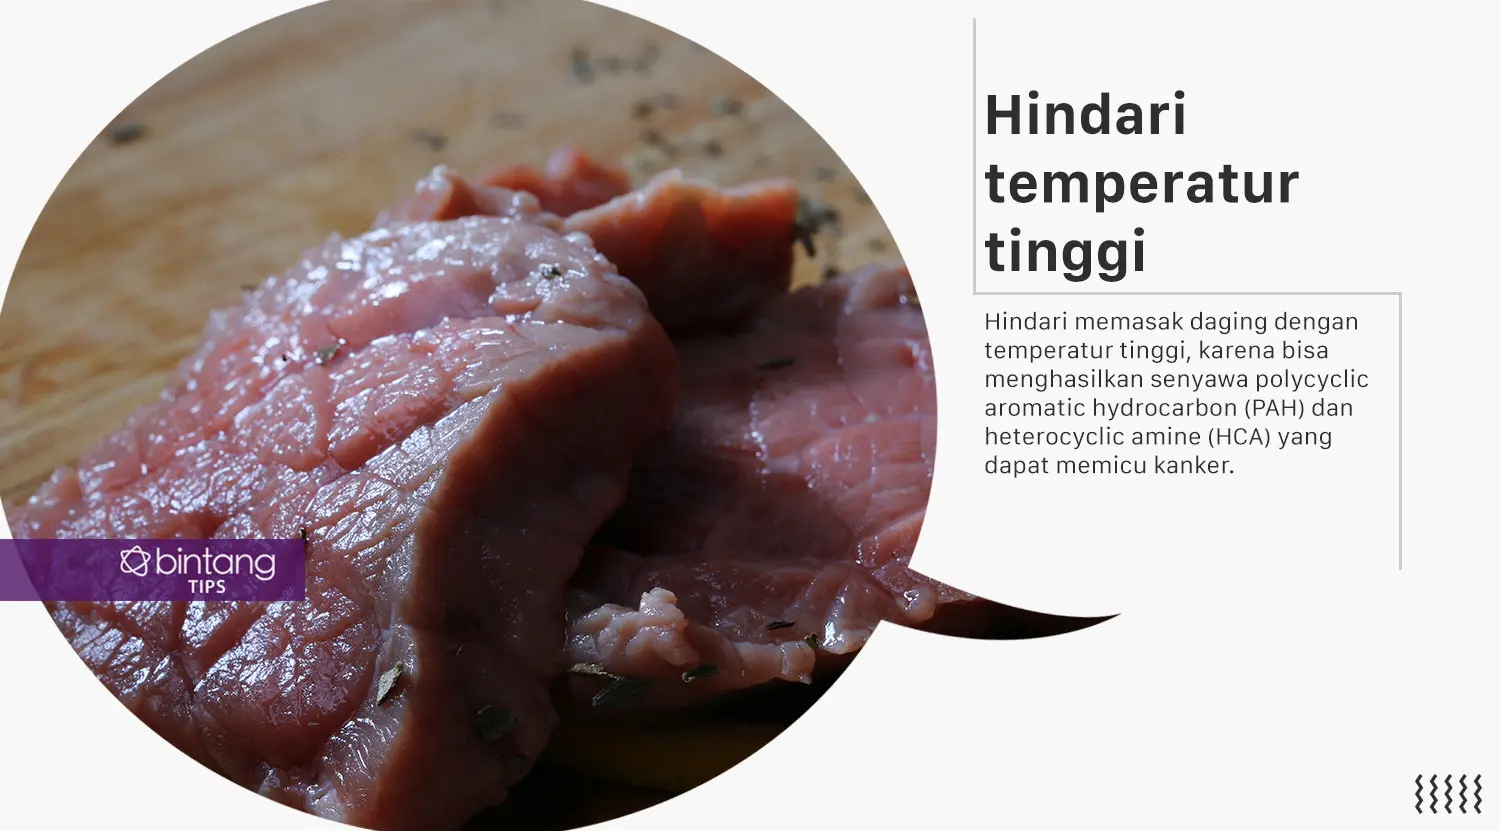 Trik memasak daging agar terhindar dari risiko kanker. (Foto: Adrian Putra, Digital Imaging: M. Iqbal Nurfajri/Bintang.com)